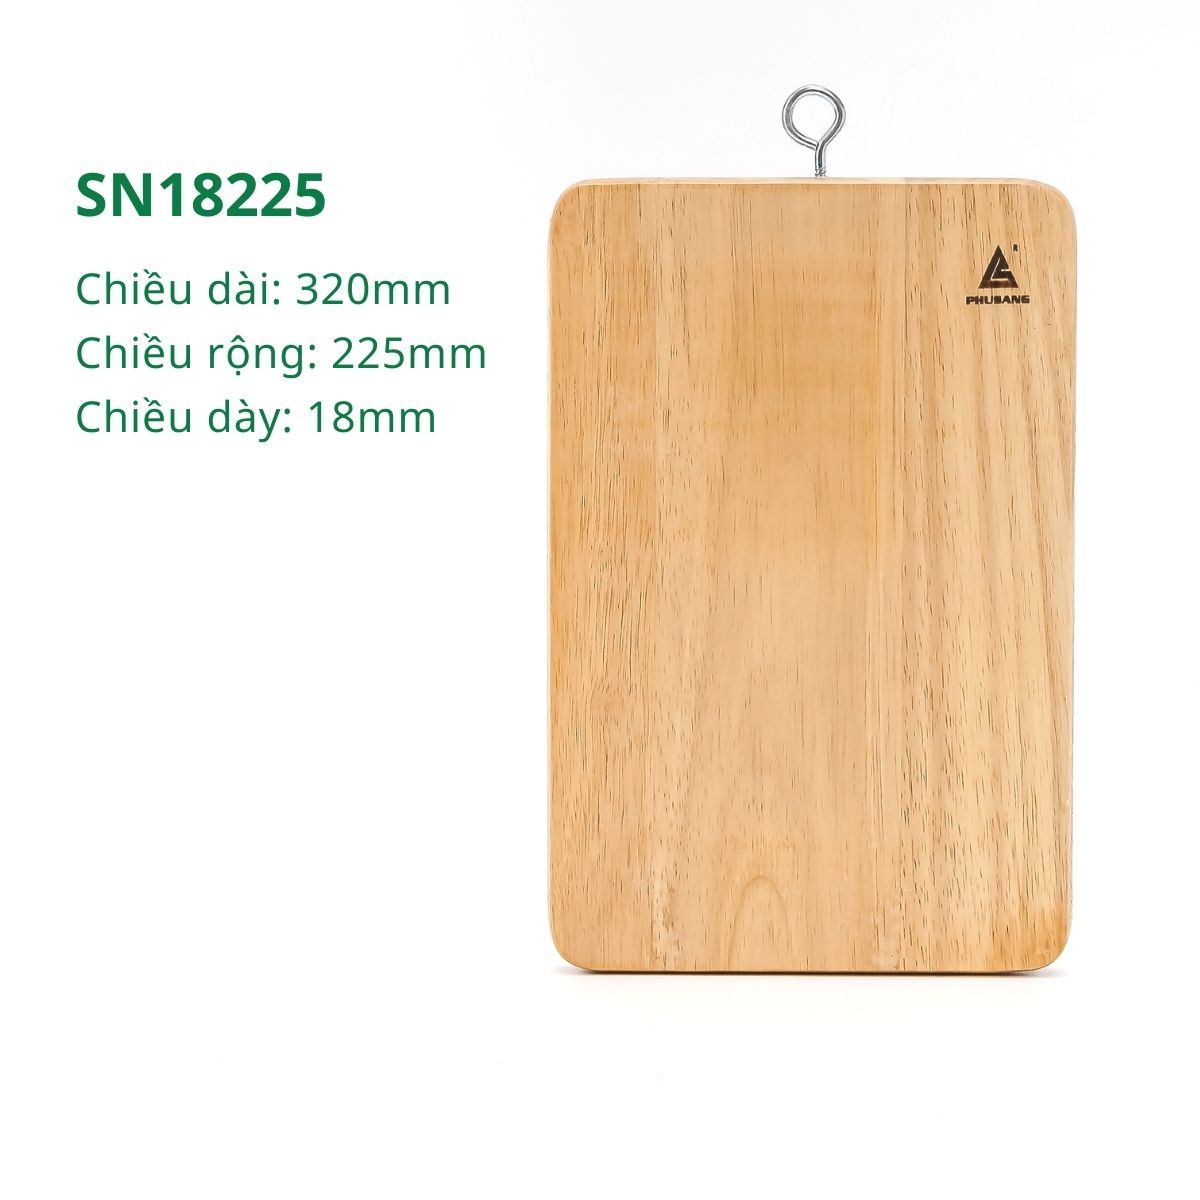 Thớt gỗ cao su tự nhiên PHUSANG hình chữ nhật không chất bảo quản chống mốc an toàn vời sức khỏe dùng để cắt, thái thức ăn